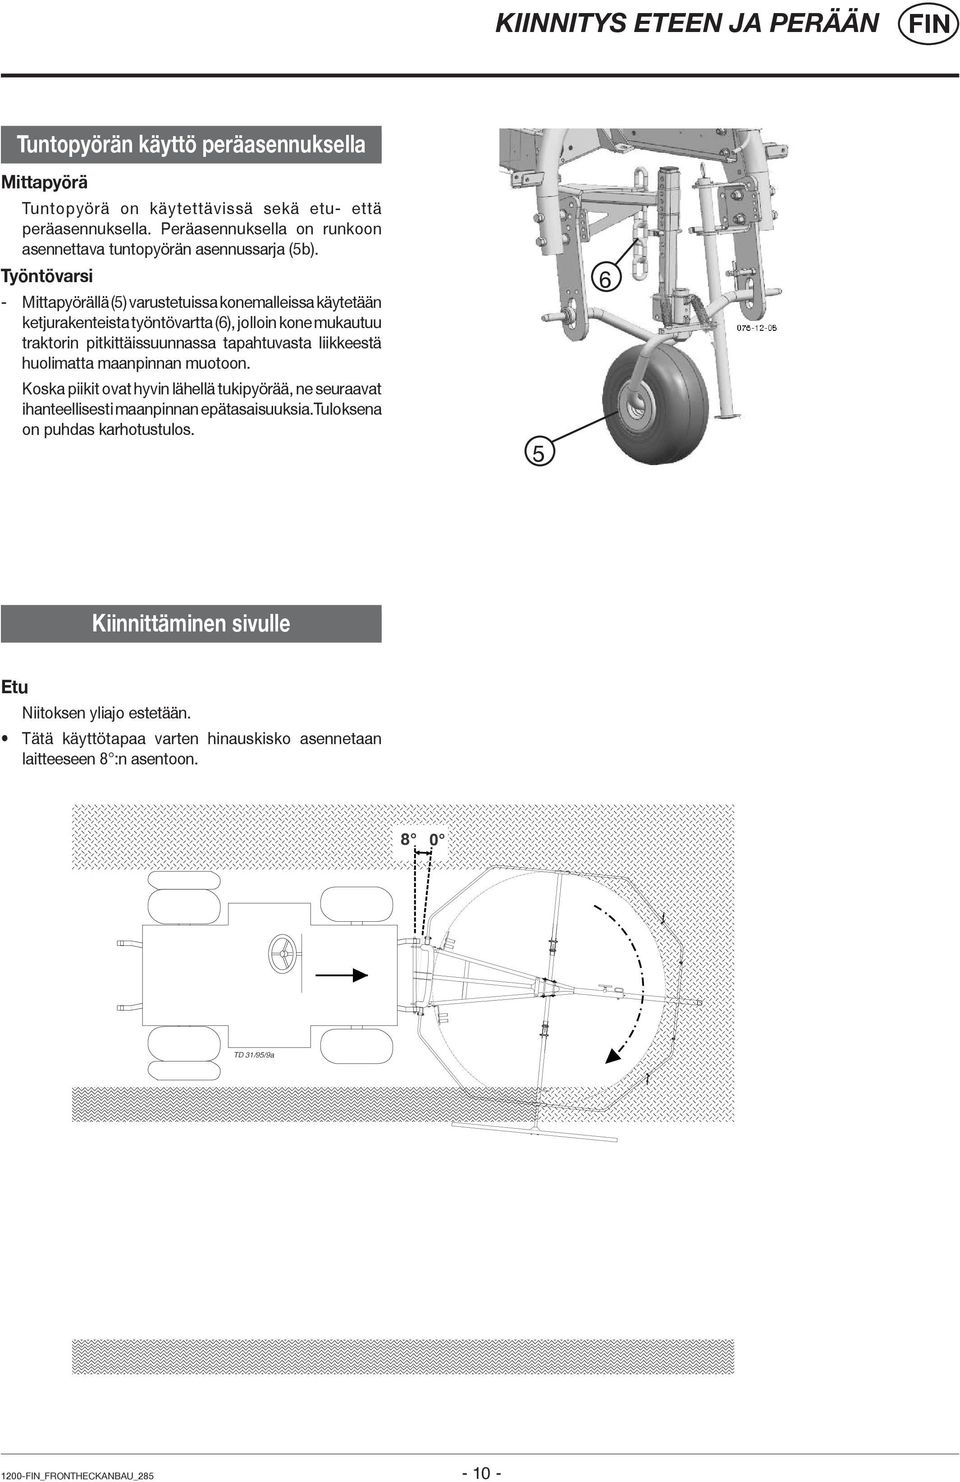 Työntövarsi - Mittapyörällä (5) varustetuissa konemalleissa käytetään ketjurakenteista työntövartta (6), jolloin kone mukautuu traktorin pitkittäissuunnassa tapahtuvasta liikkeestä